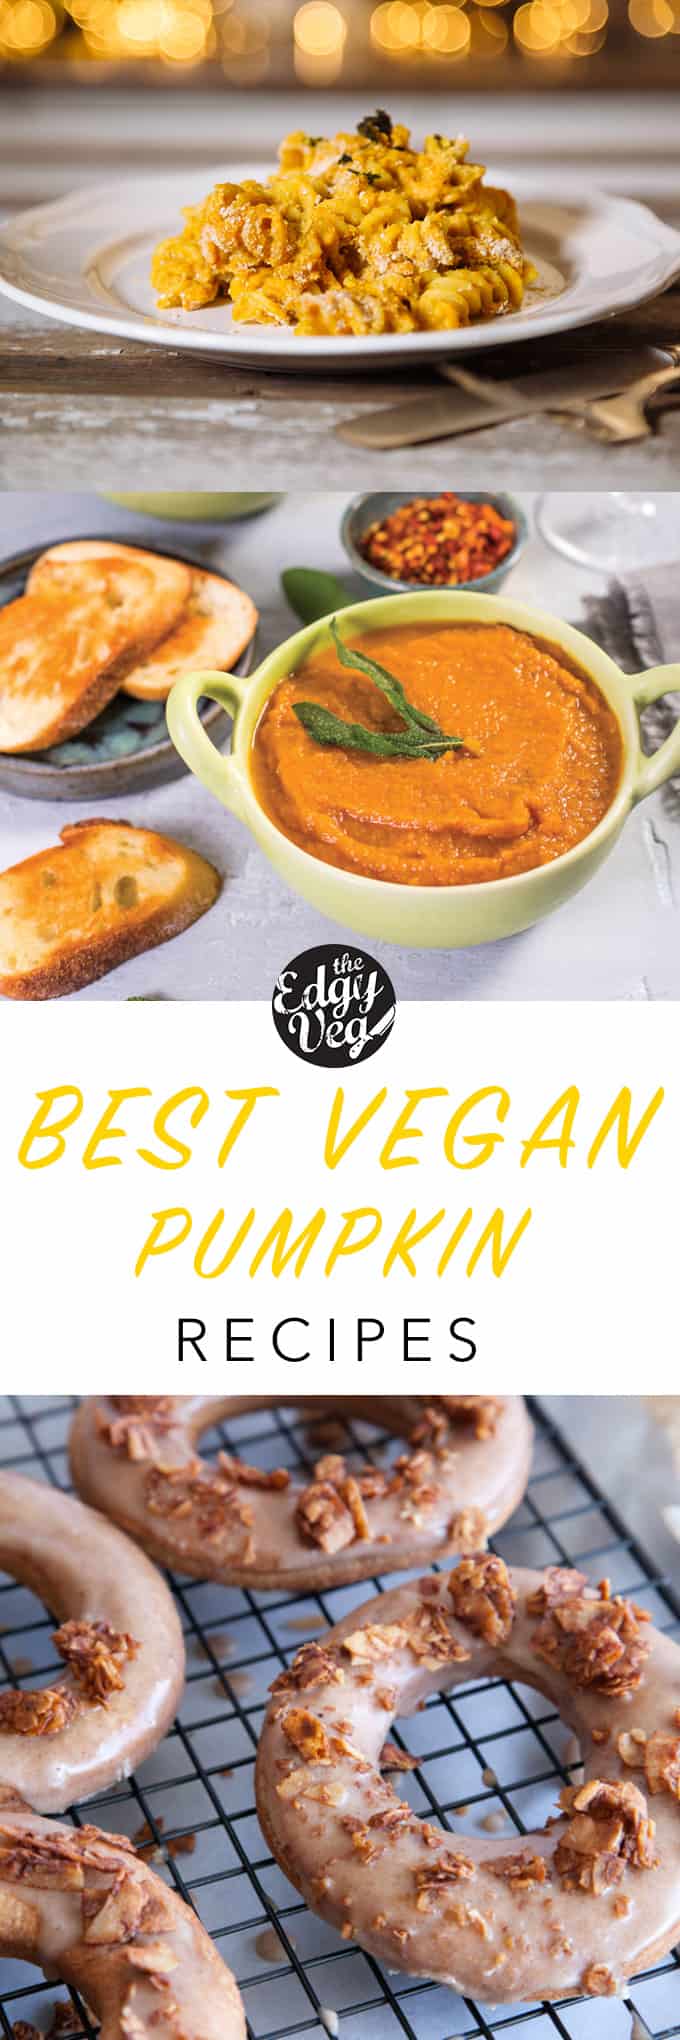 Edgy Veg pumpkin recipes